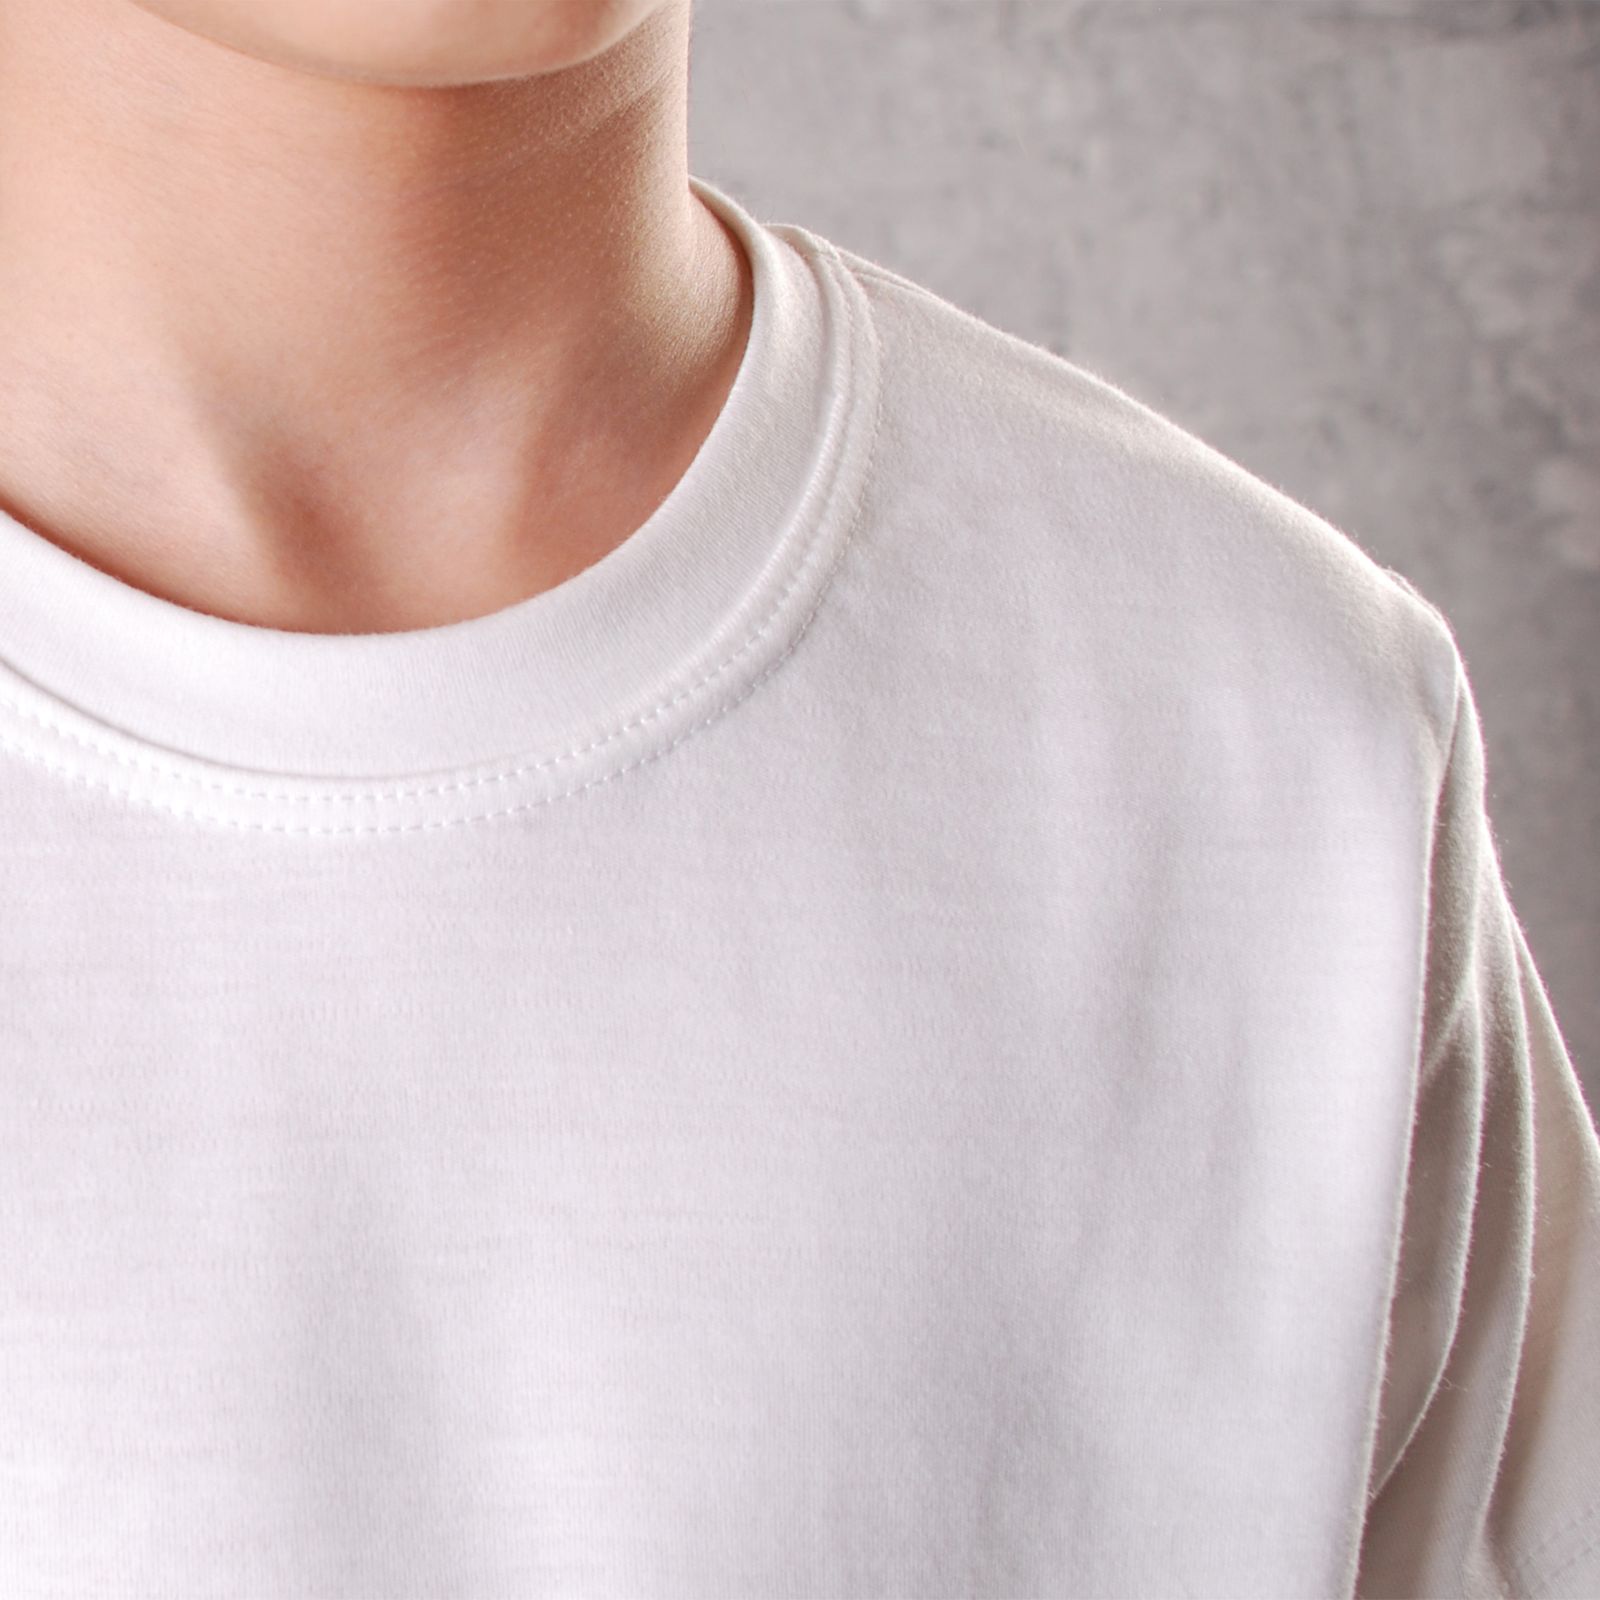 ست پیراهن و تی شرت پسرانه قرآنی مدل 211604PNK -  - 7